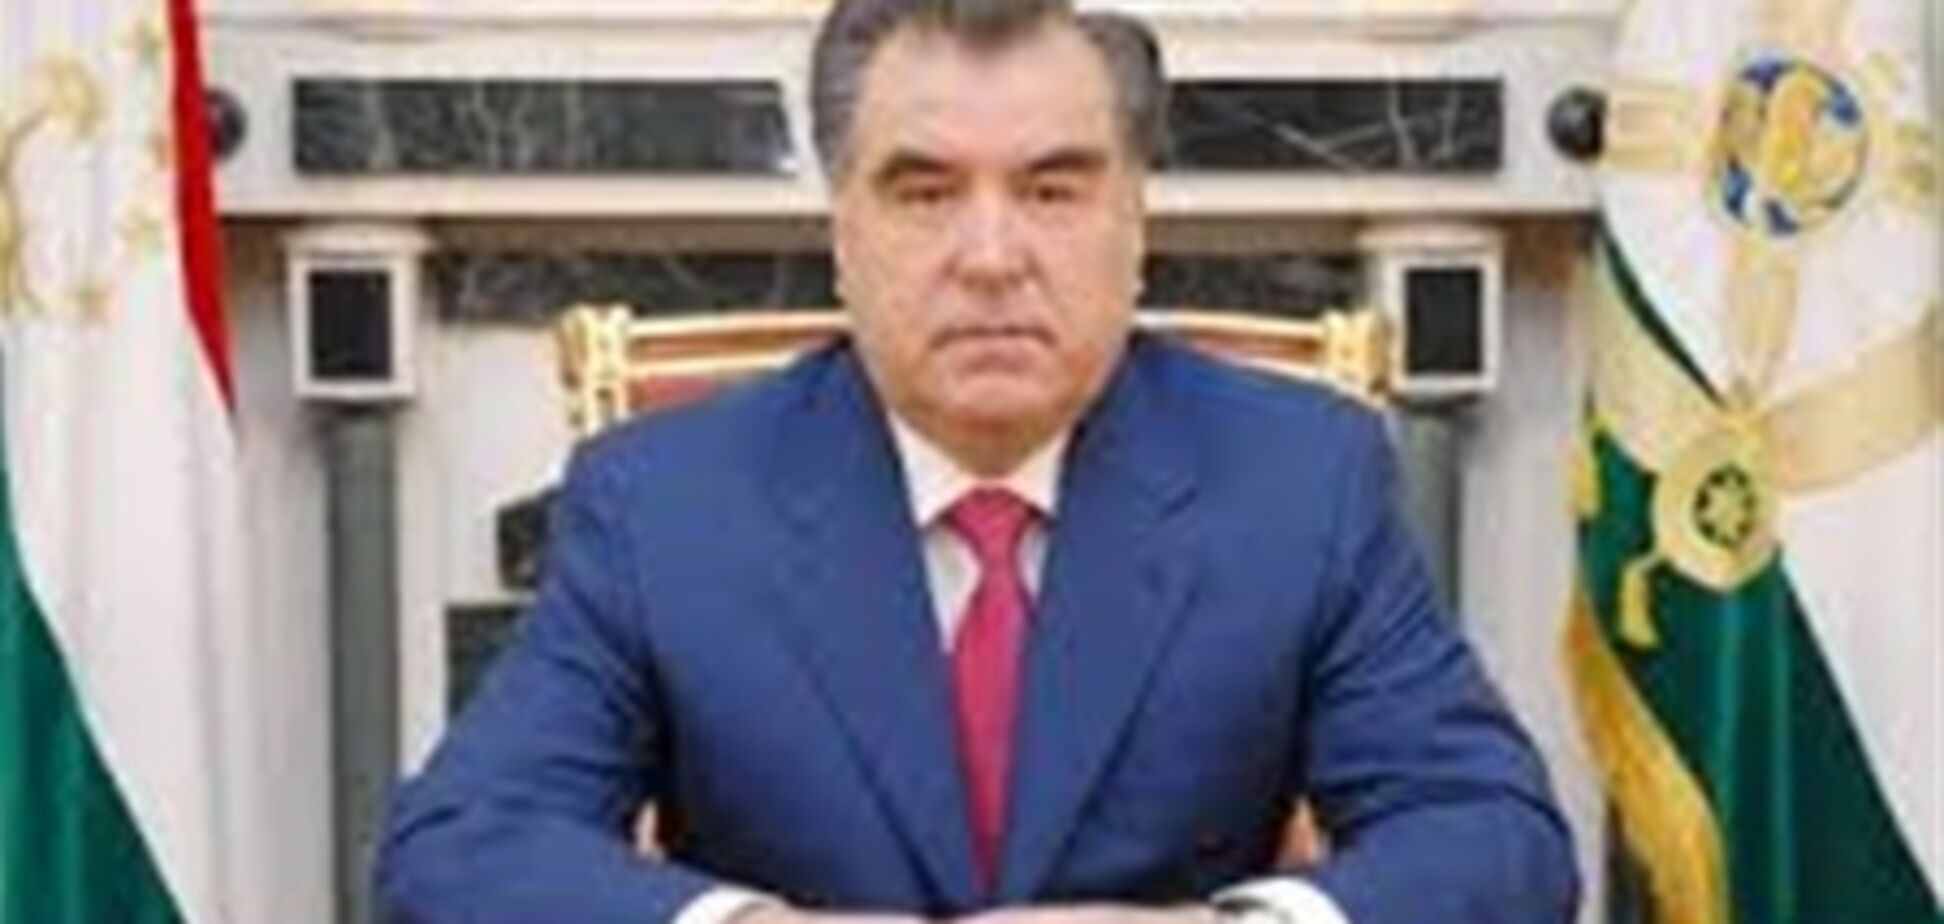 Имамы будут разъяснять таджикам смысл президентских посланий